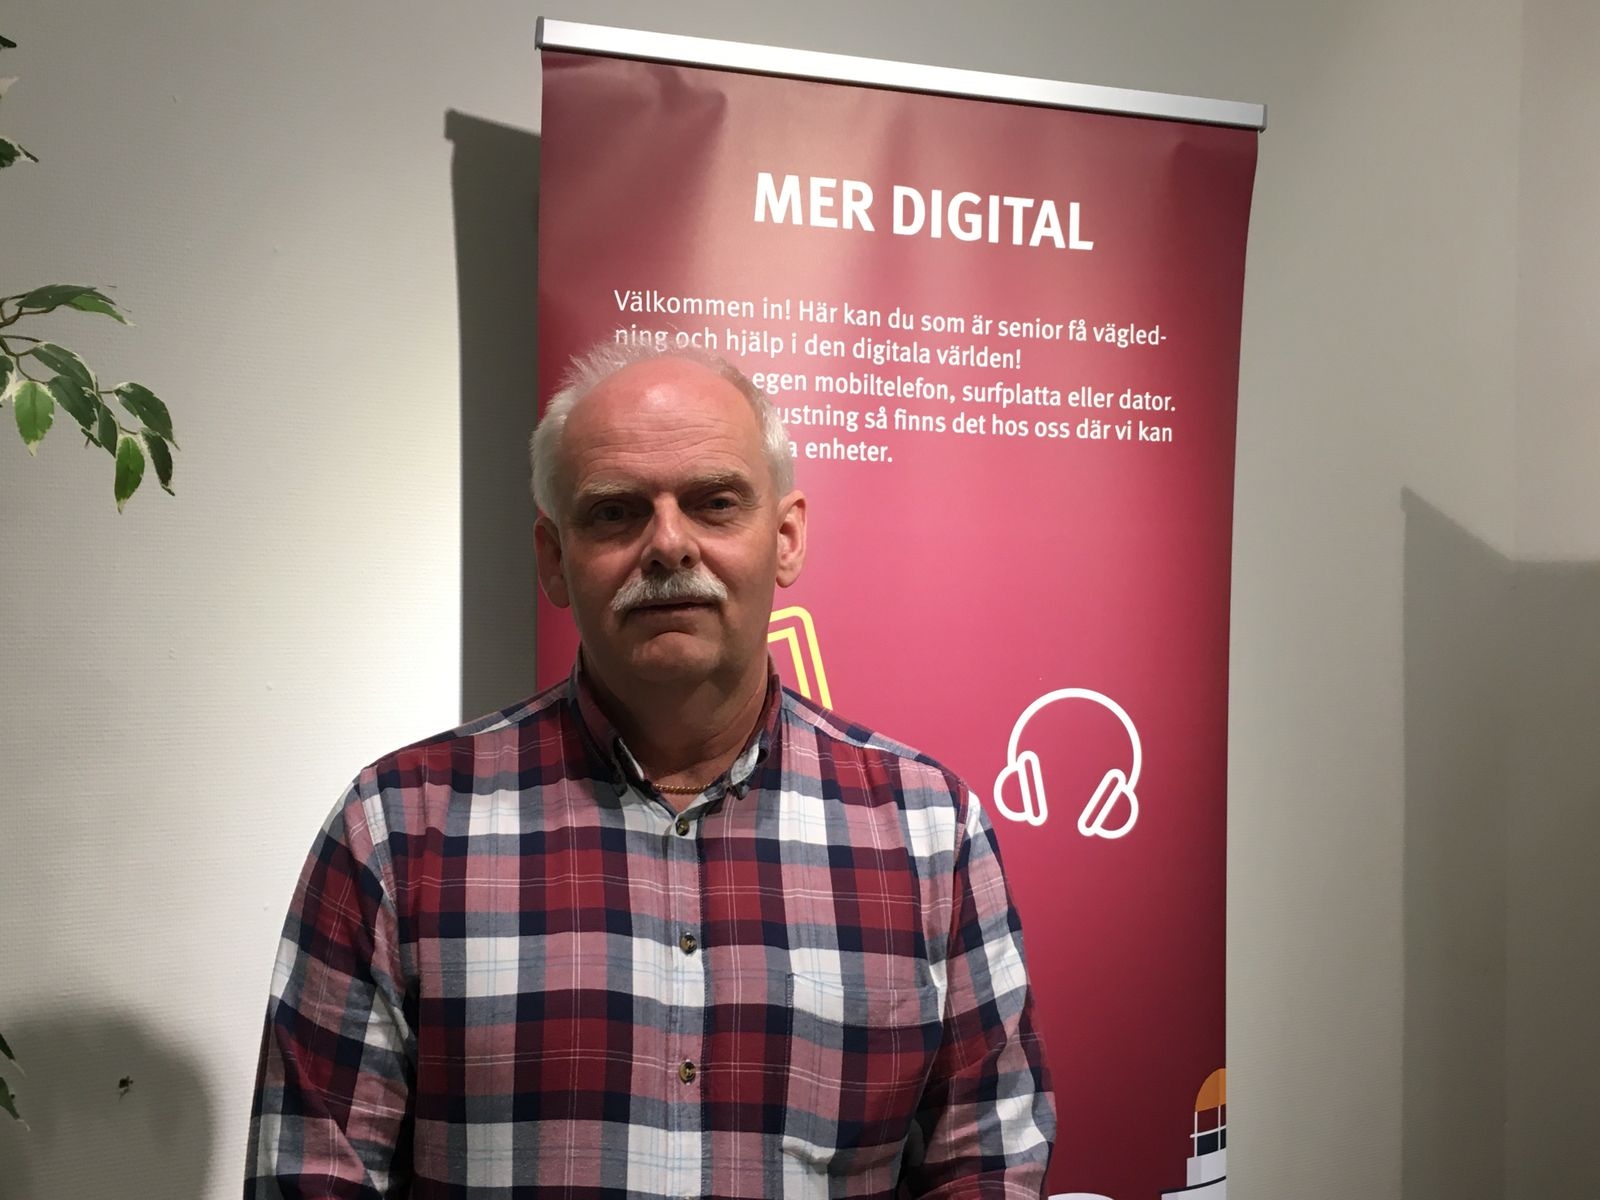 Anders Gustafsson från Mörbylånga kommun jobbar med satsningen ”Mer digital” som ska få fler äldre att bli mer digitala.